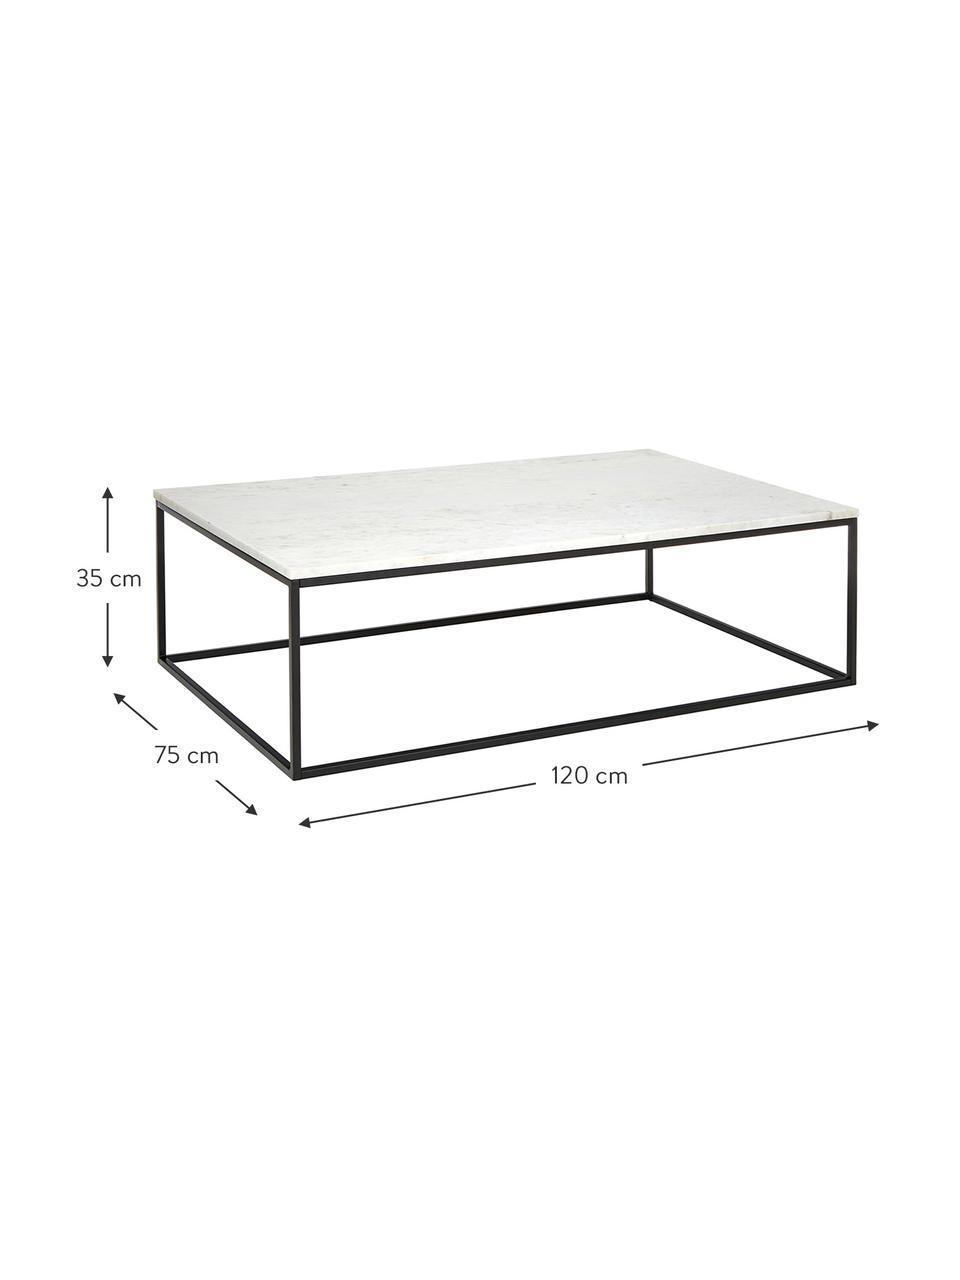 Veľký mramorový konferenčný stolík Alys, Mramorová biela, čierna, Š 120 x H 75 cm